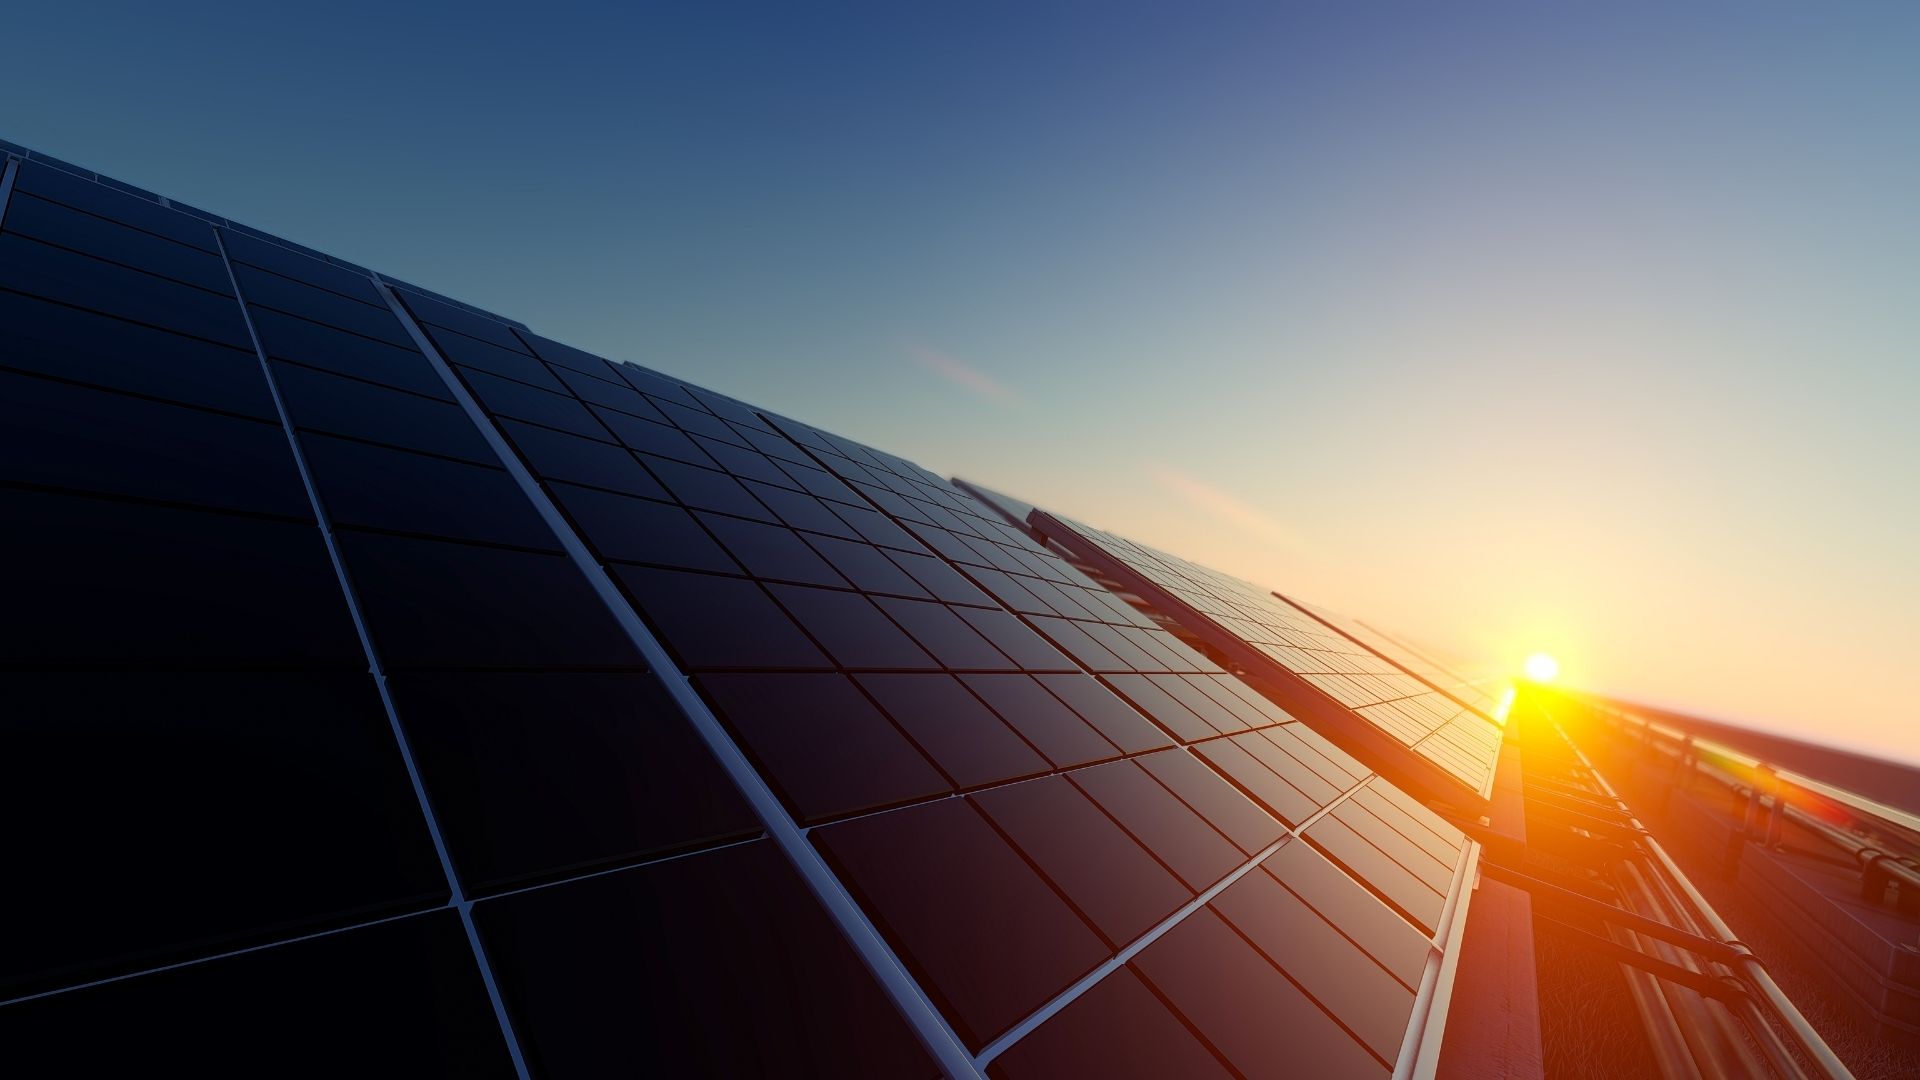 panneau solaire autonome une solution energetique durable et autonome.jpeg